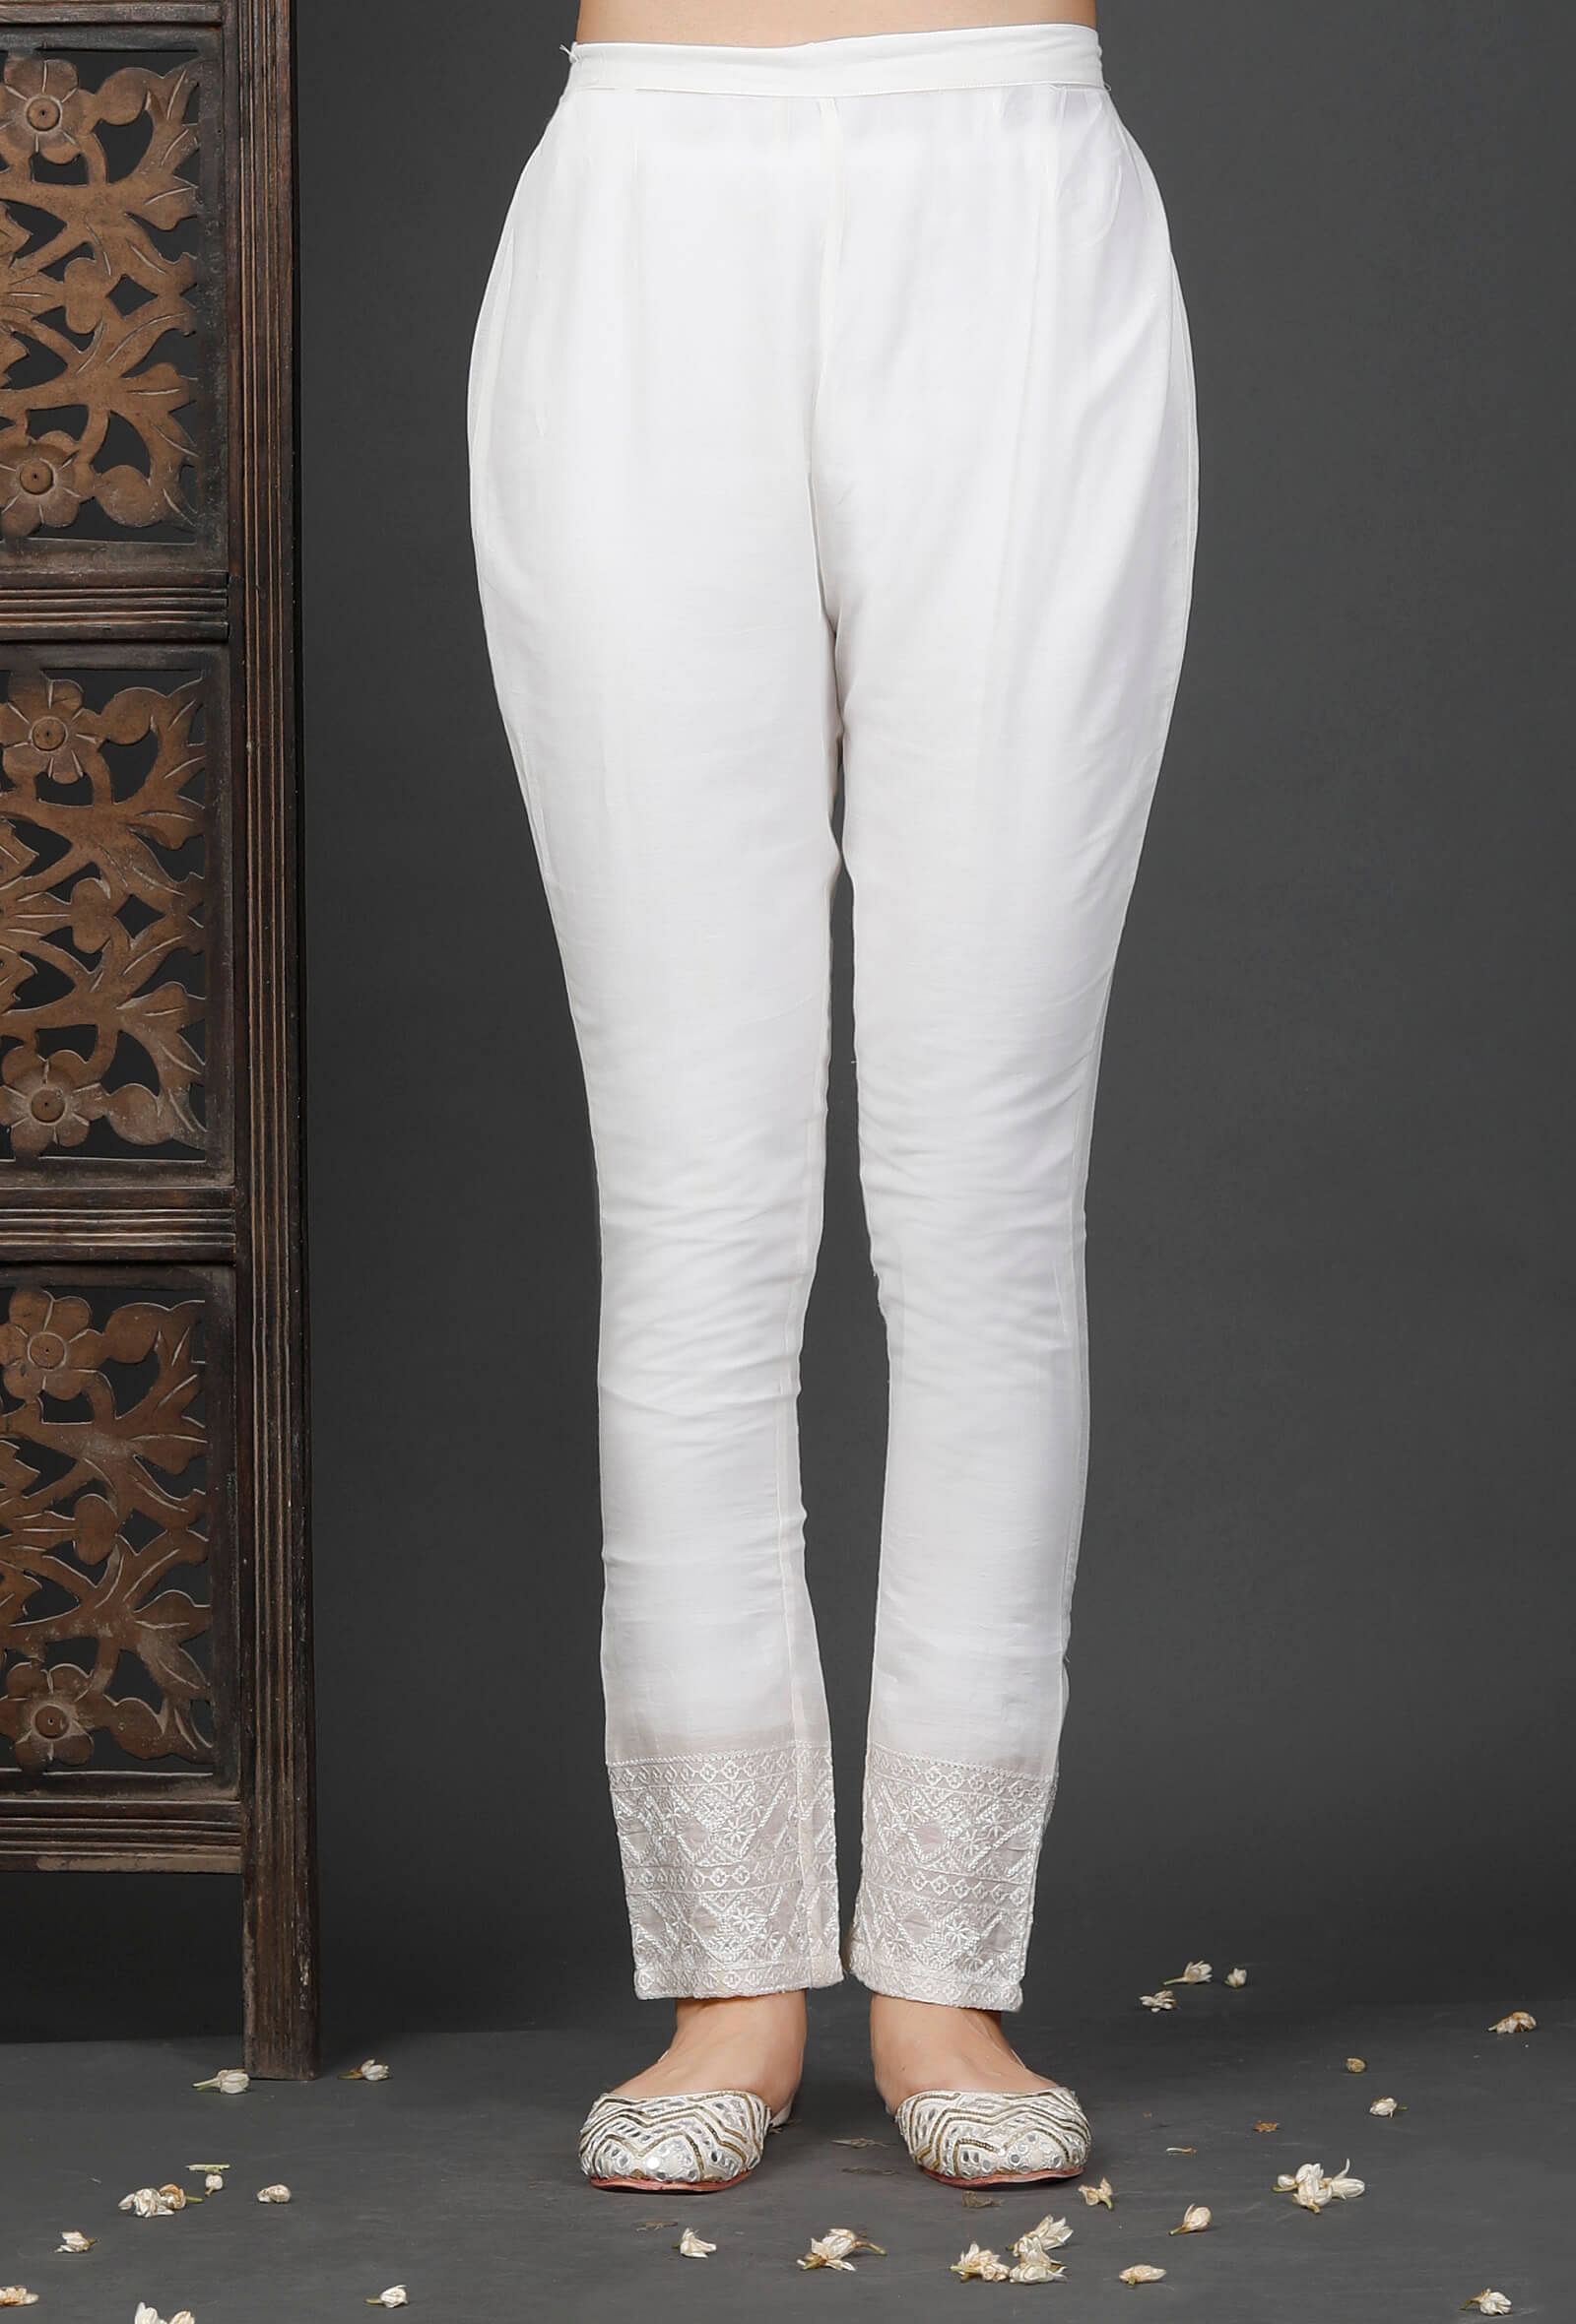 Women's White Pants | Ann Taylor